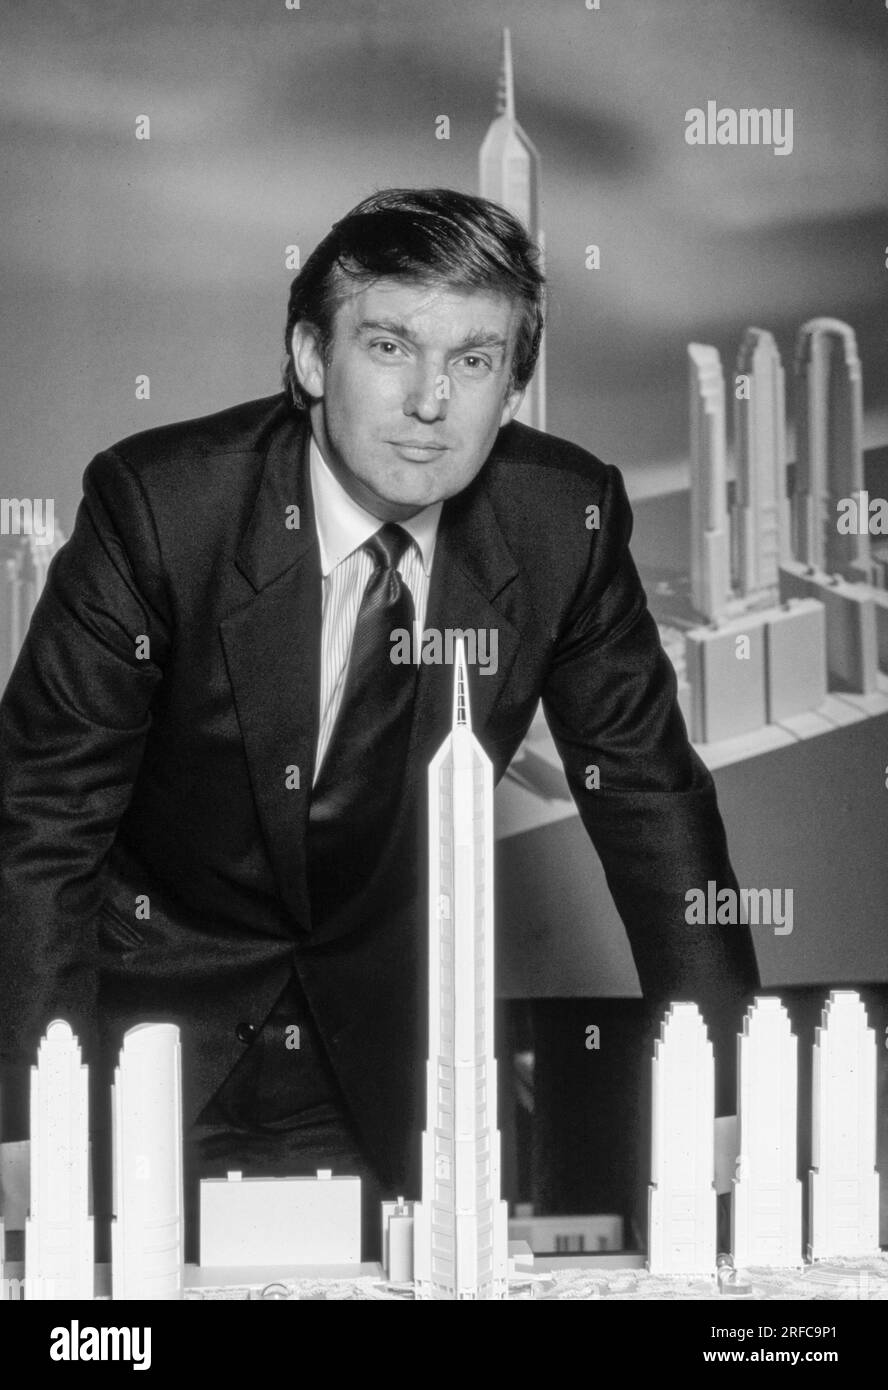 Sviluppatore Donald Trump della Trump Organization, con modelli architettonici di edifici dello skyline di New York. Fotografia di Bernard Gotfryd Foto Stock